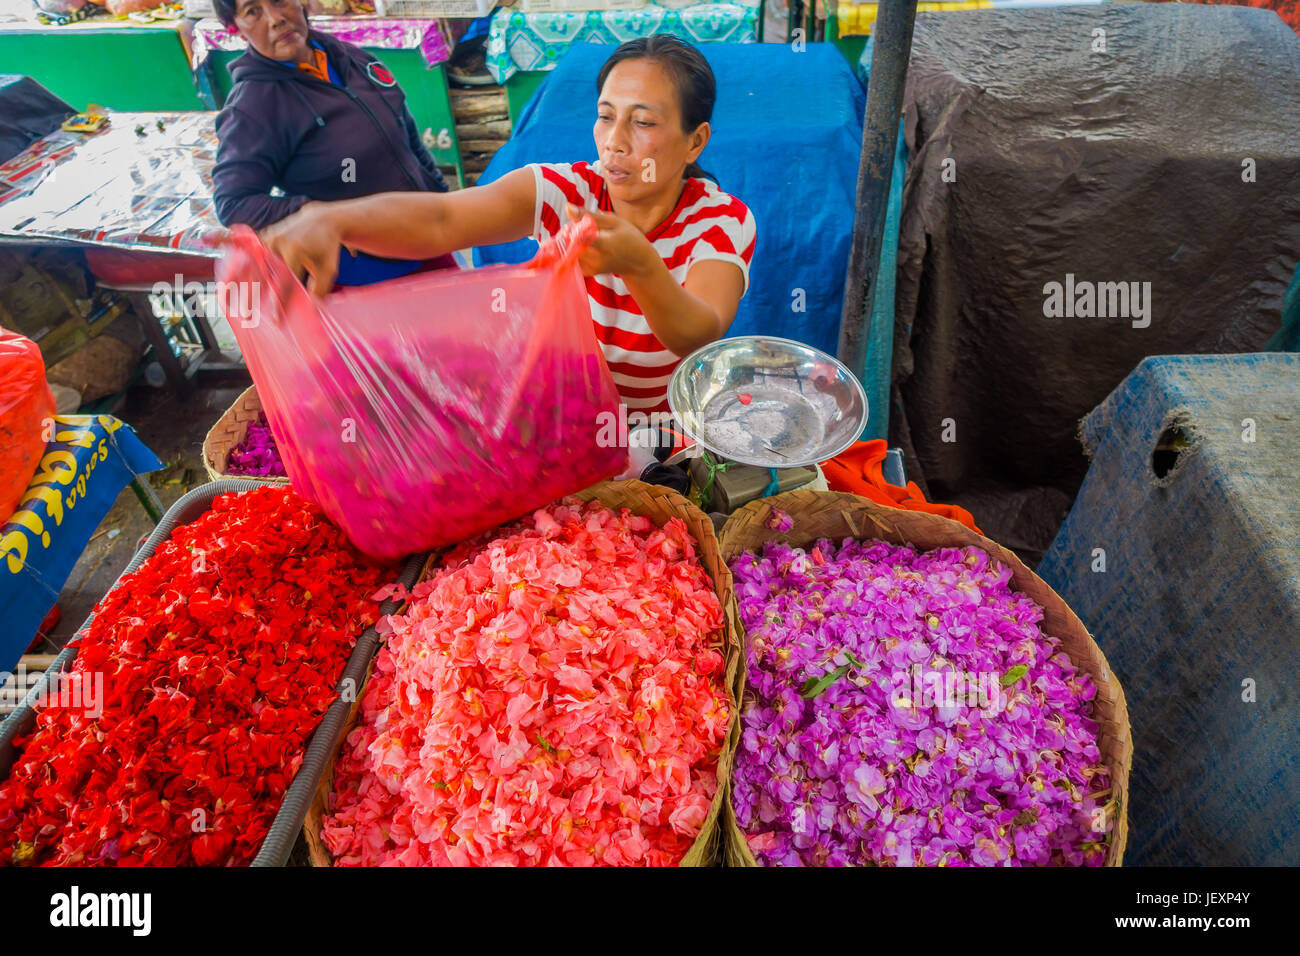 BALI, Indonesien - 8. März 2017: Unbekannte Menschen in Bali-Blumenmarkt im Freien. Blumen werden täglich von balinesischen Hindus als symbolische Opfergaben verwendet. Stockfoto